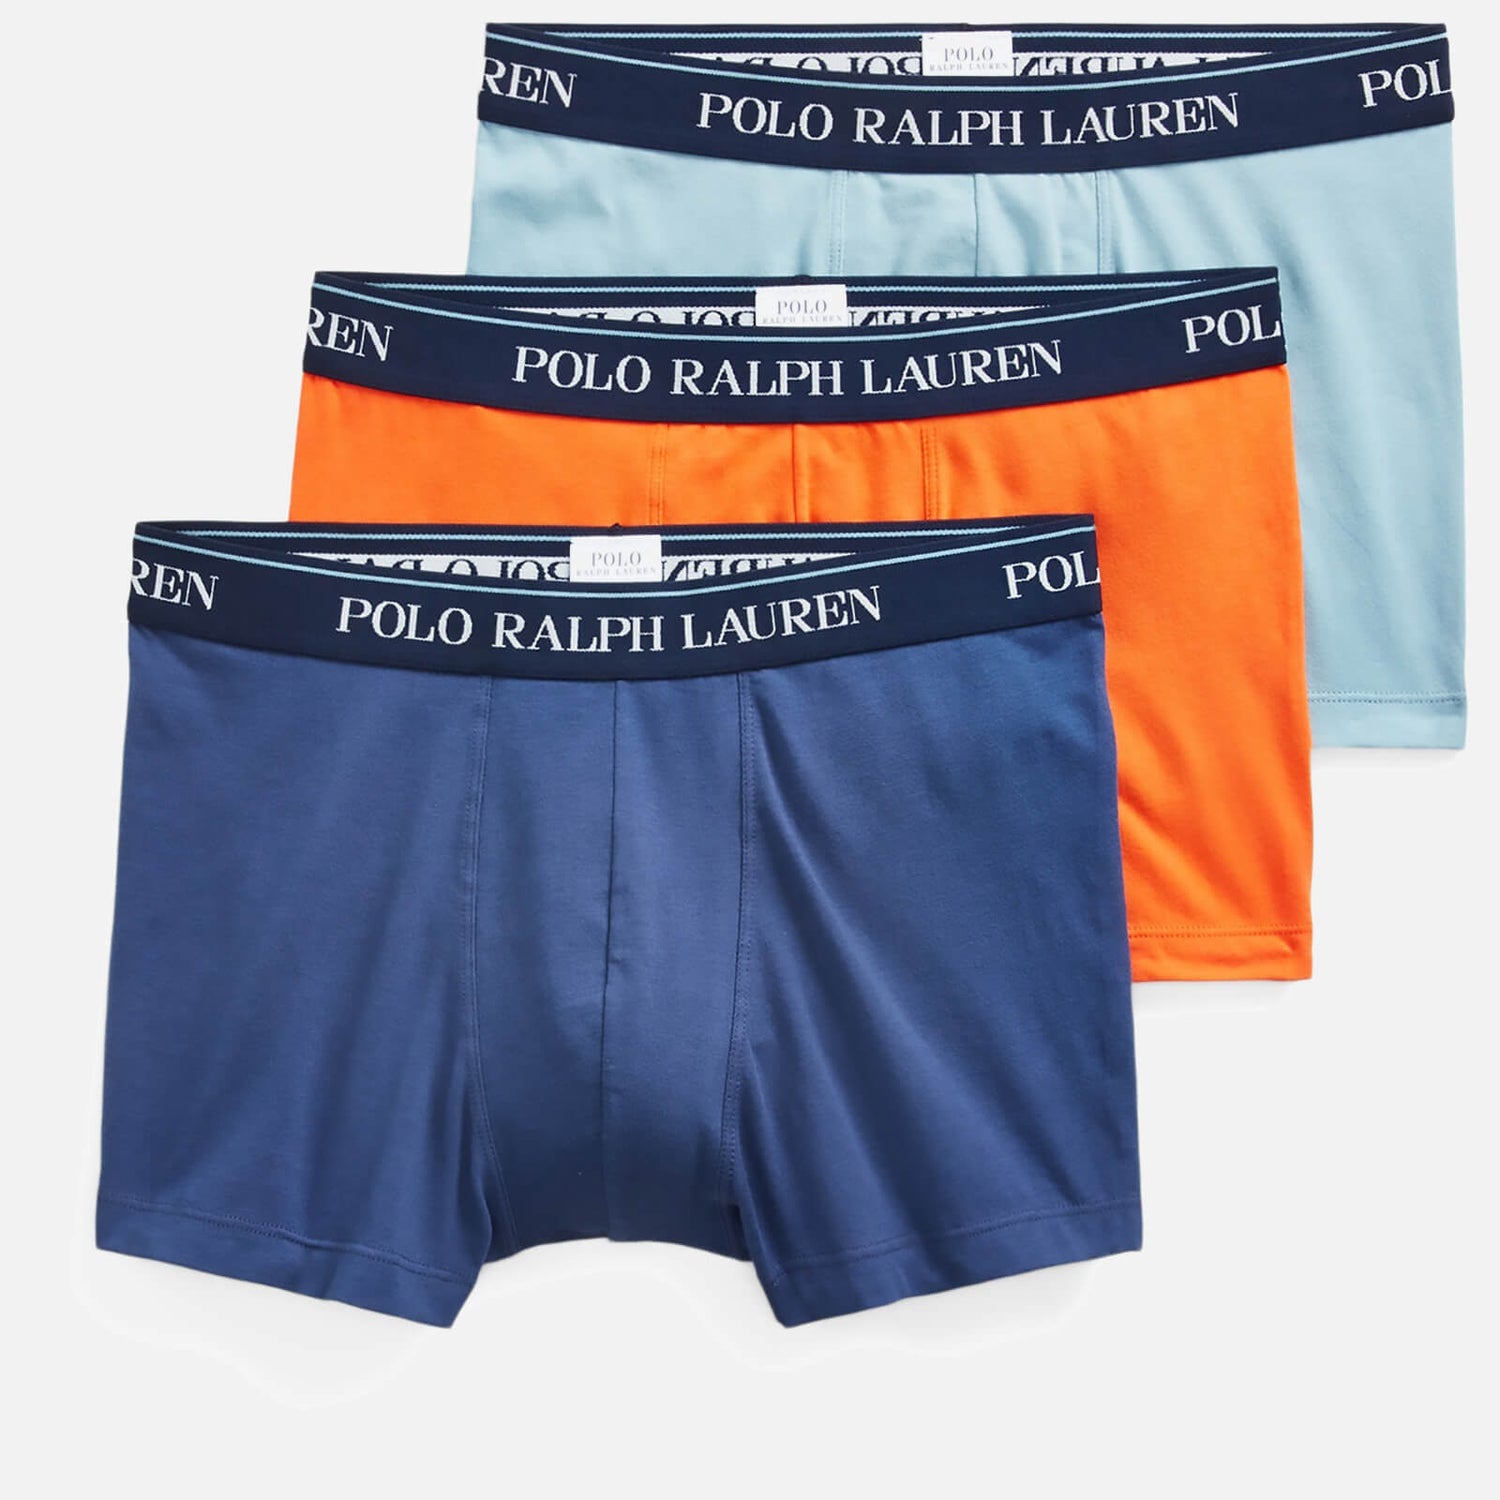 Polo Ralph Lauren Men's 3-Pack Classic Trunks - Light Navy/Orange/Blue